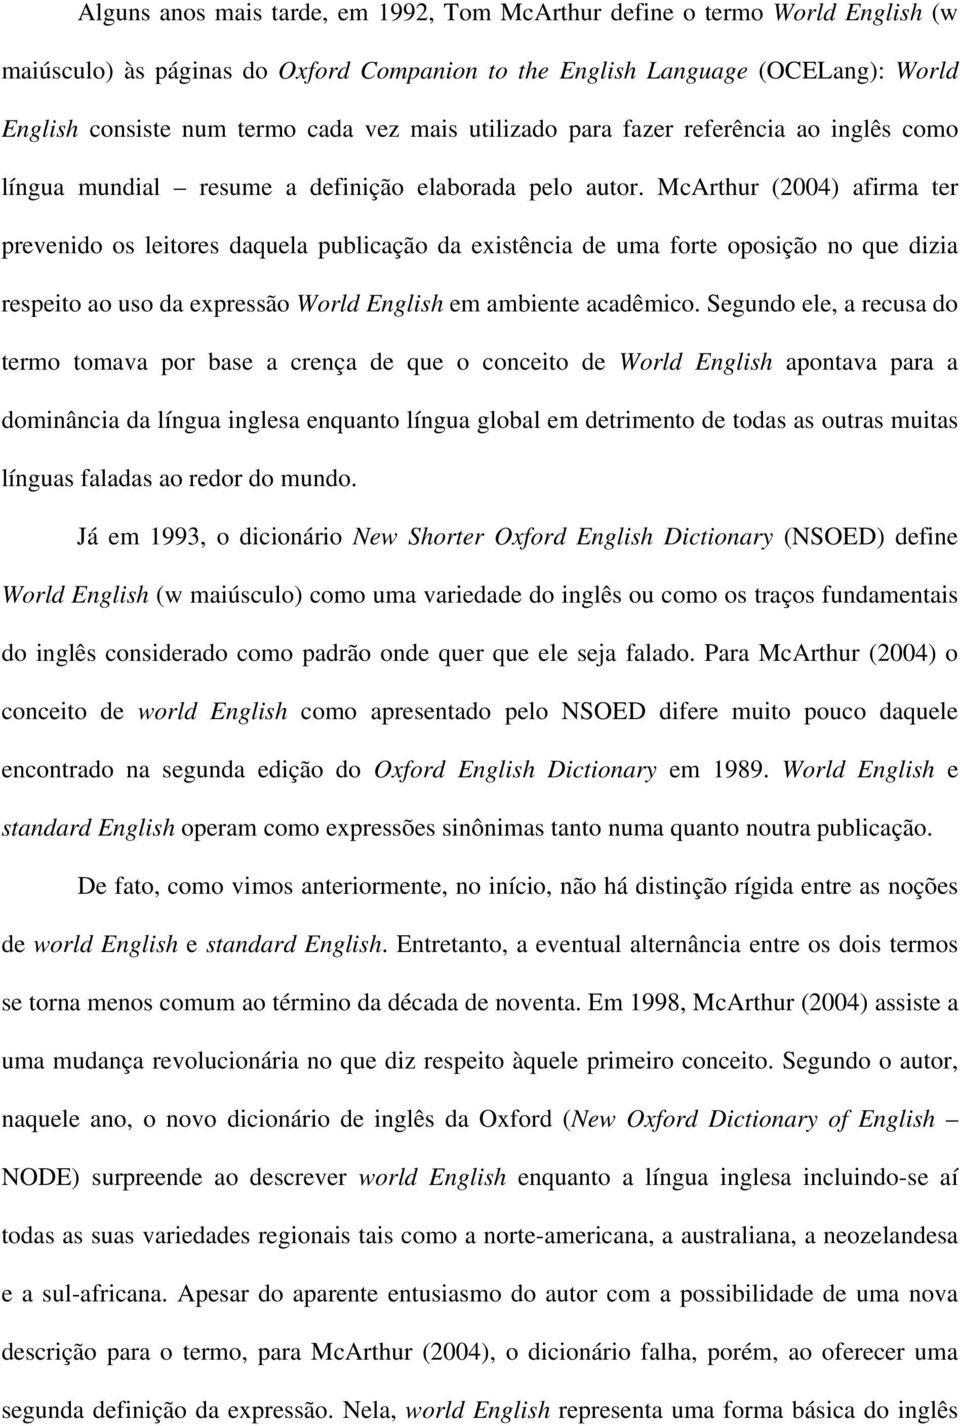 McArthur (2004) afirma ter prevenido os leitores daquela publicação da existência de uma forte oposição no que dizia respeito ao uso da expressão World English em ambiente acadêmico.